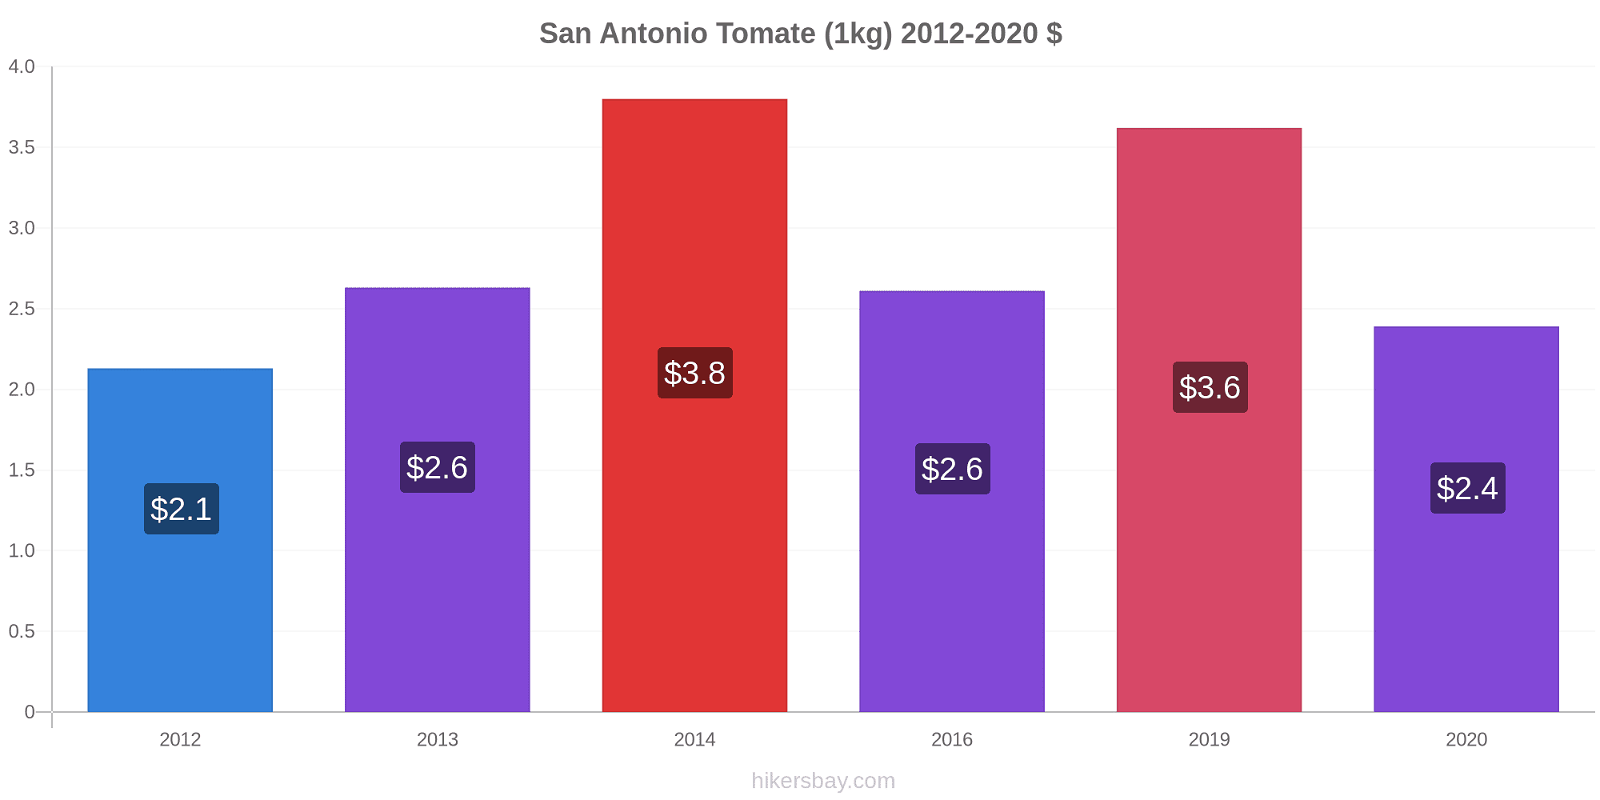 San Antonio cambios de precios Tomate (1kg) hikersbay.com